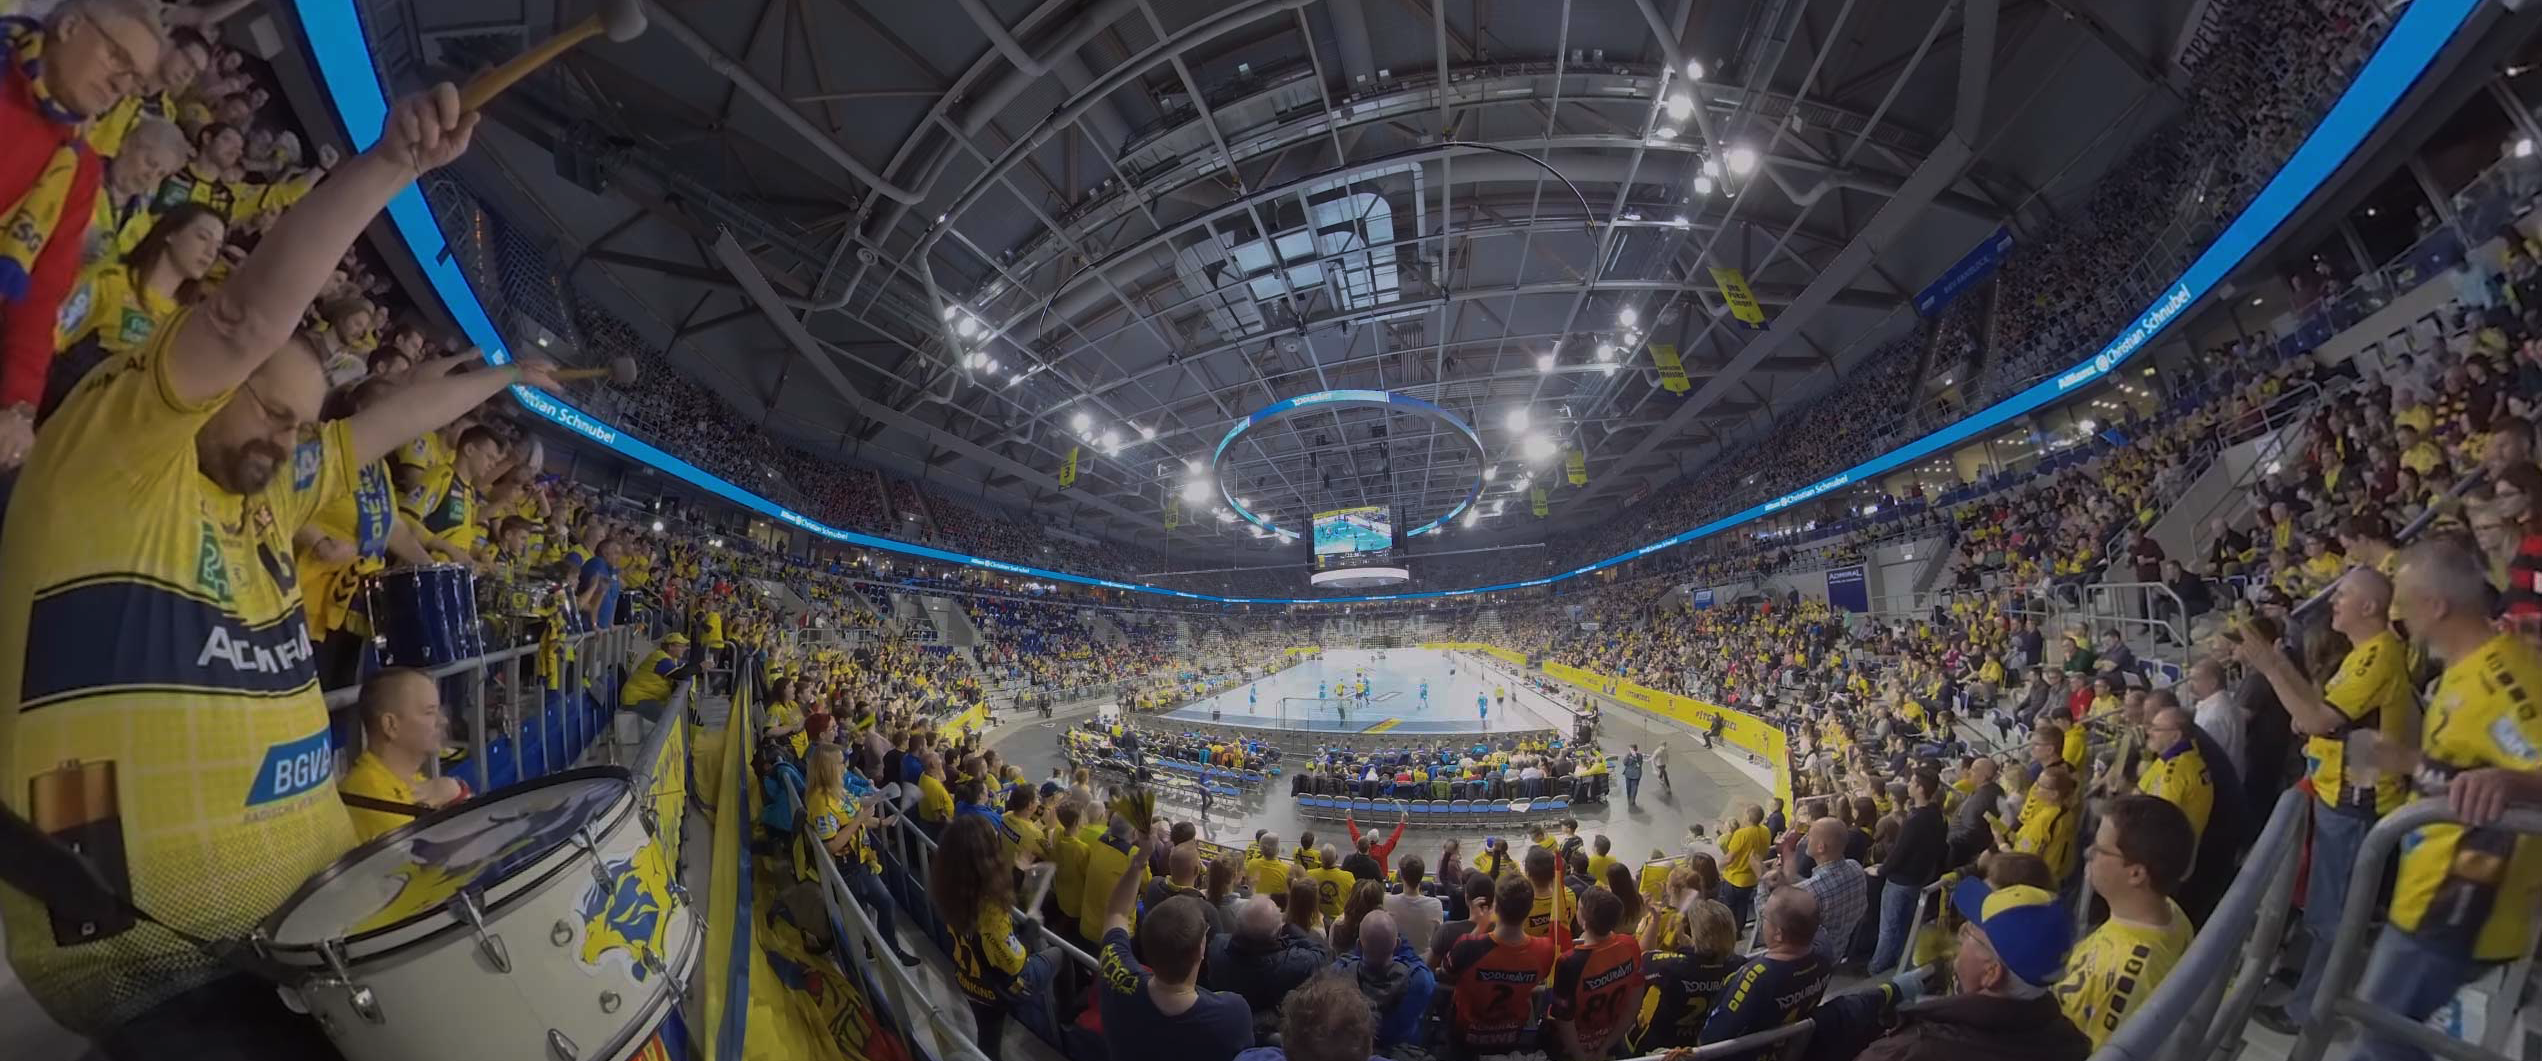 Ansicht aus dem 360 Grad Video. Viele Fans stehen auf den Publikumsrängen und schauen auf die Arena.